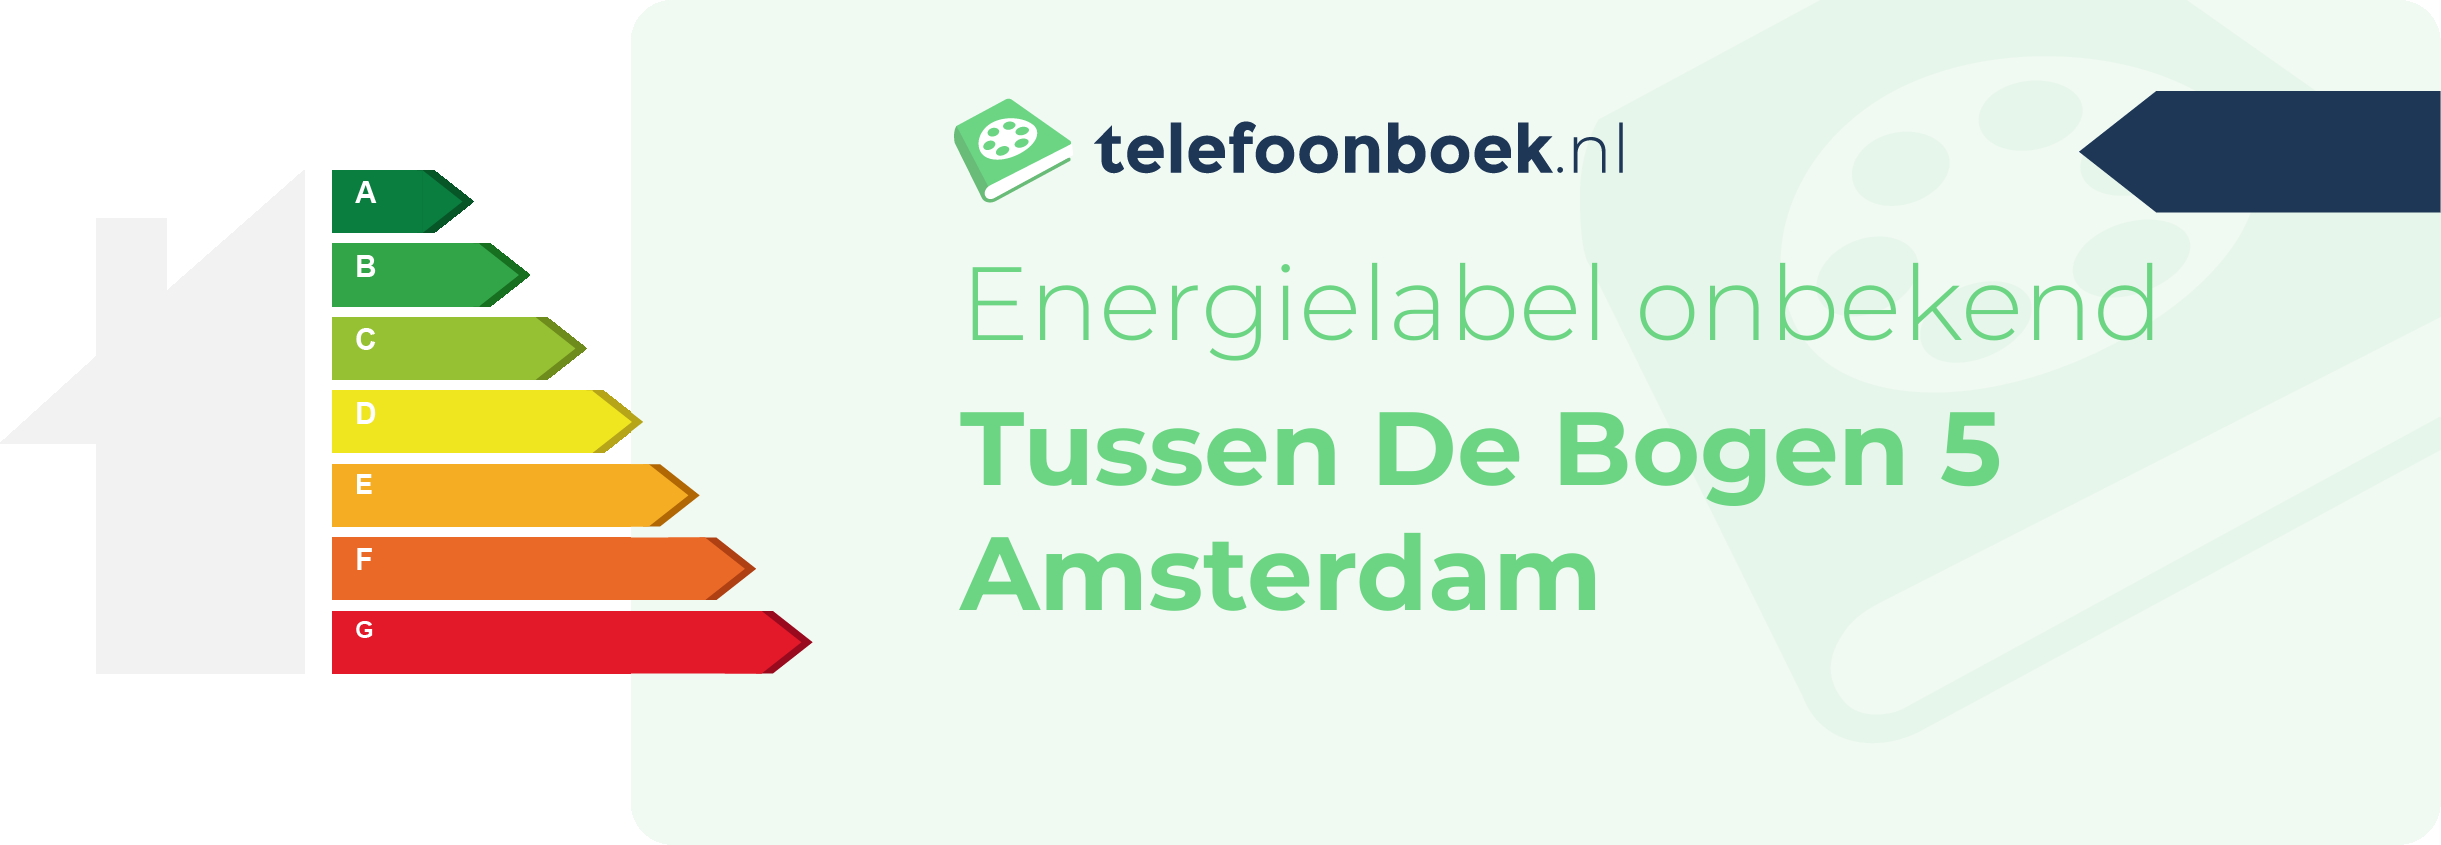 Energielabel Tussen De Bogen 5 Amsterdam